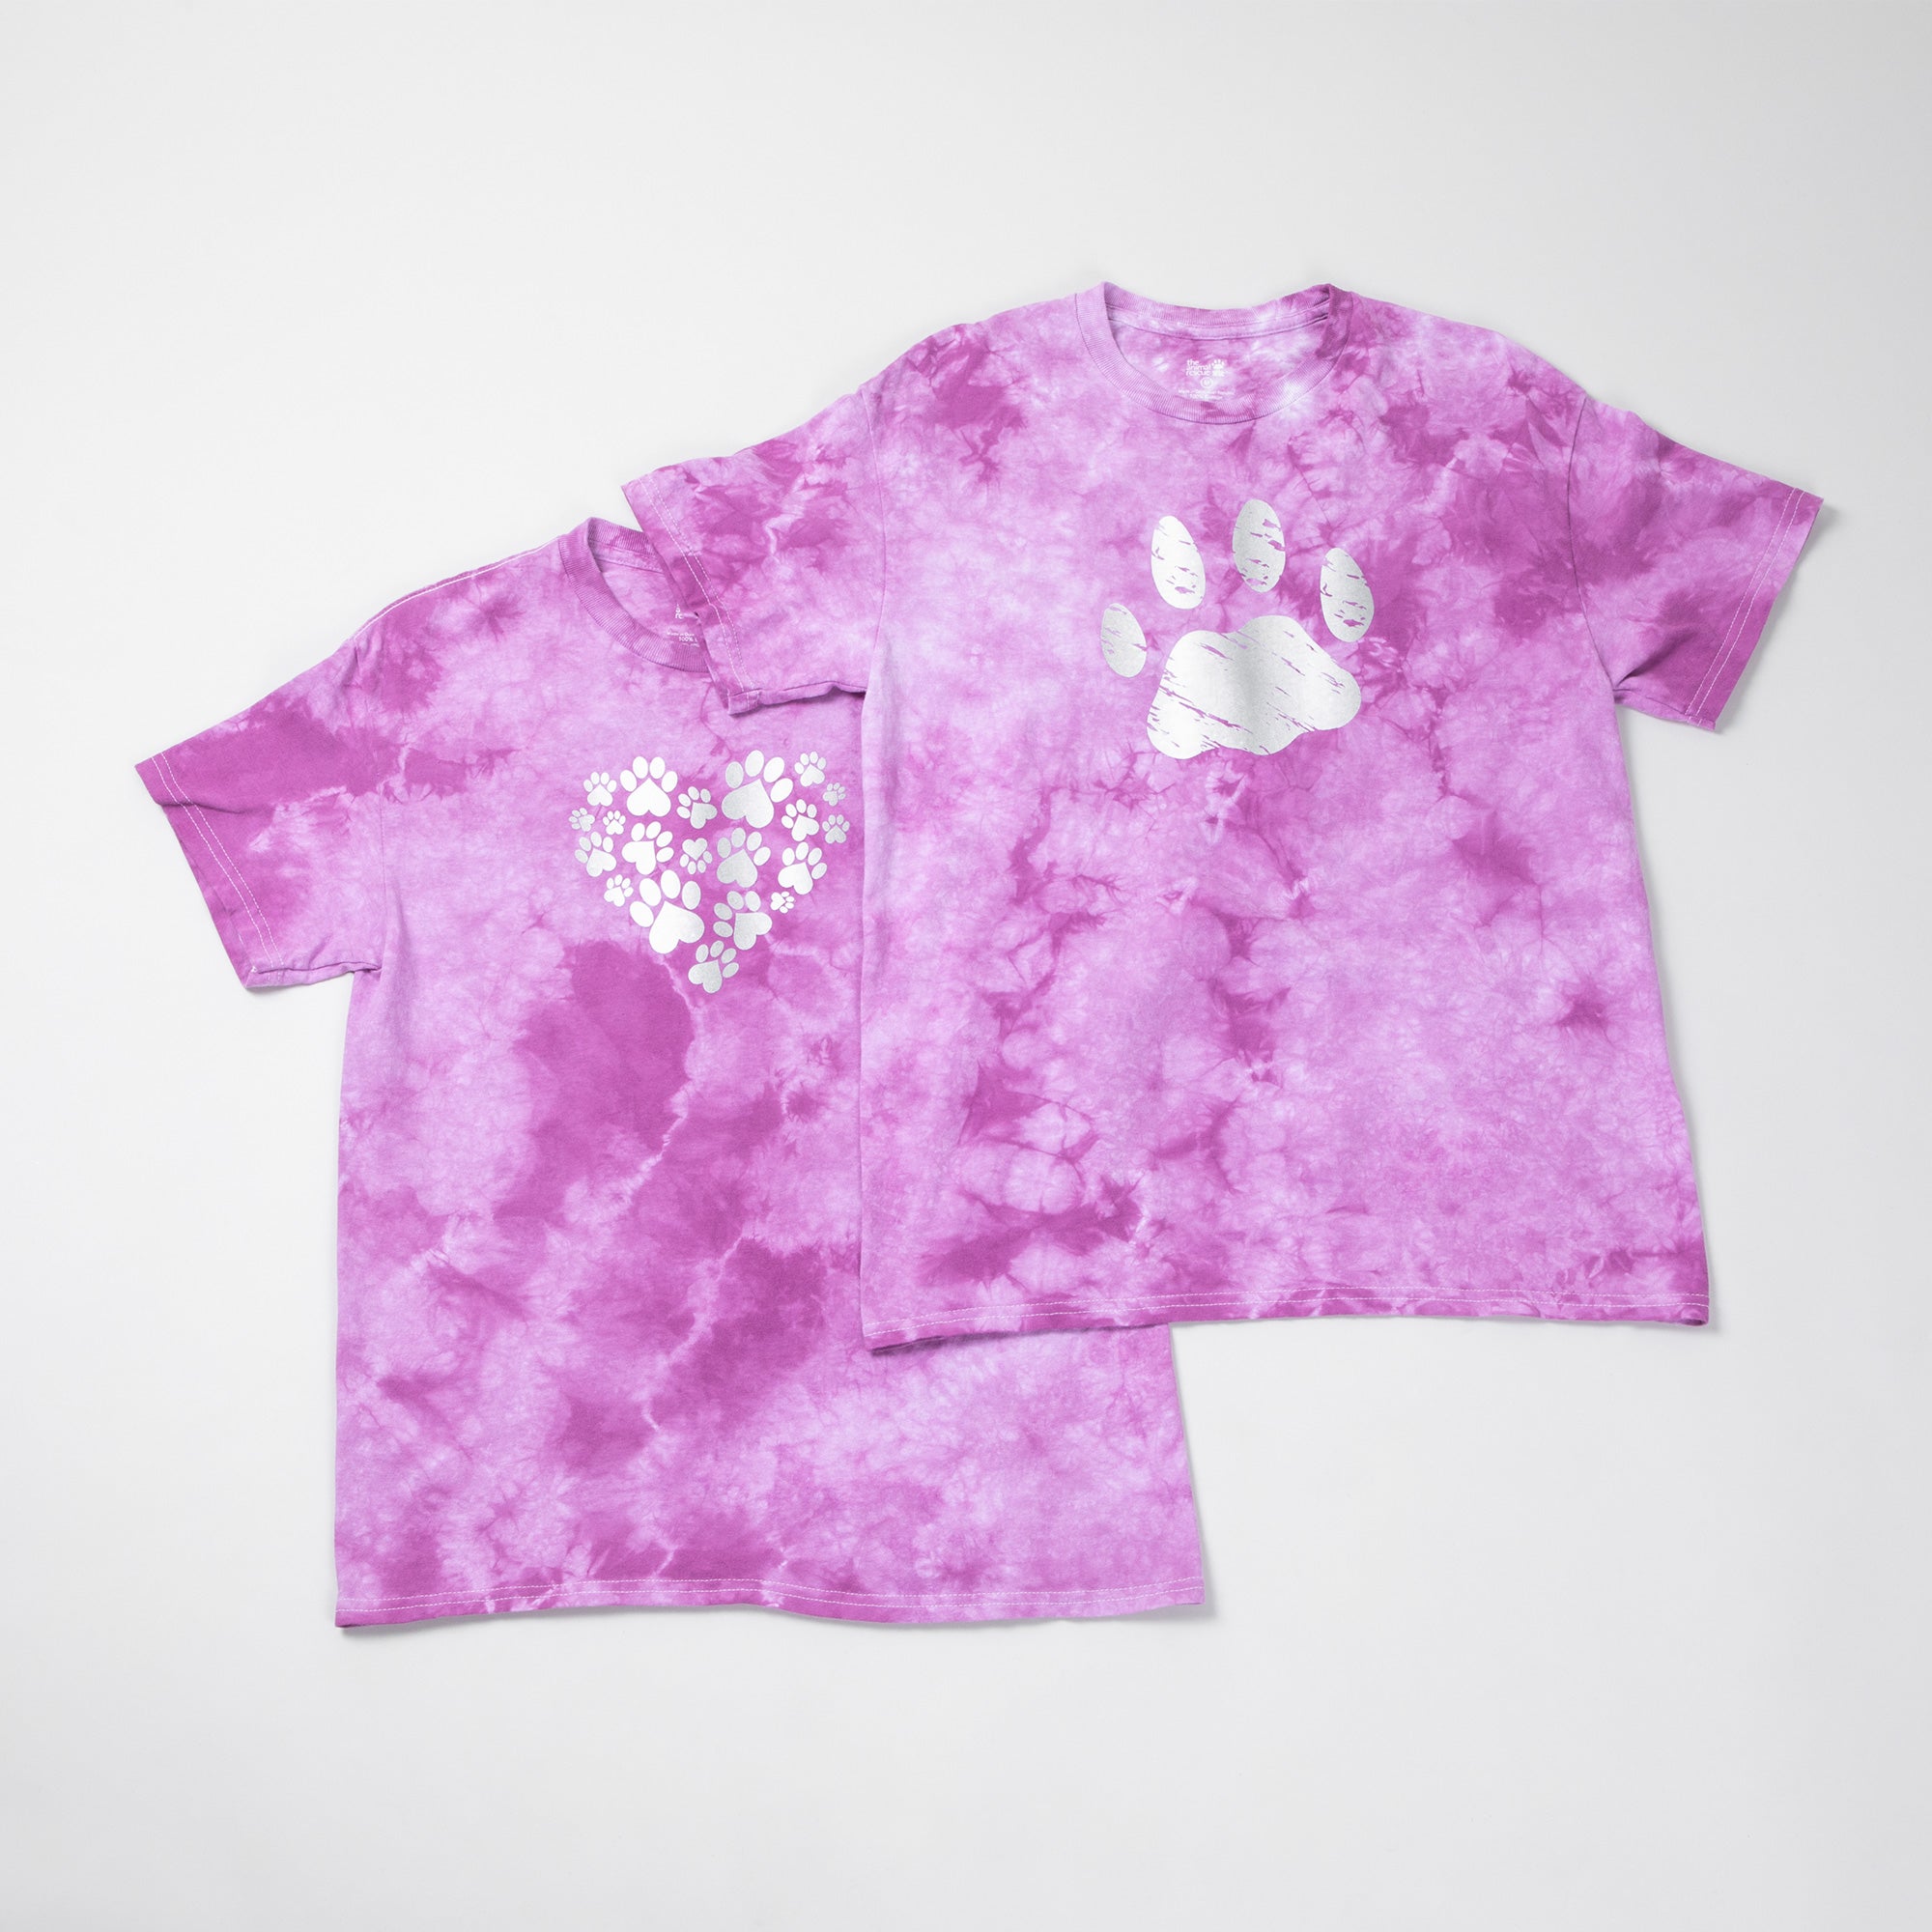 Paw Print Boysenberry Tie-Dye T-Shirt - Heart Paws - S